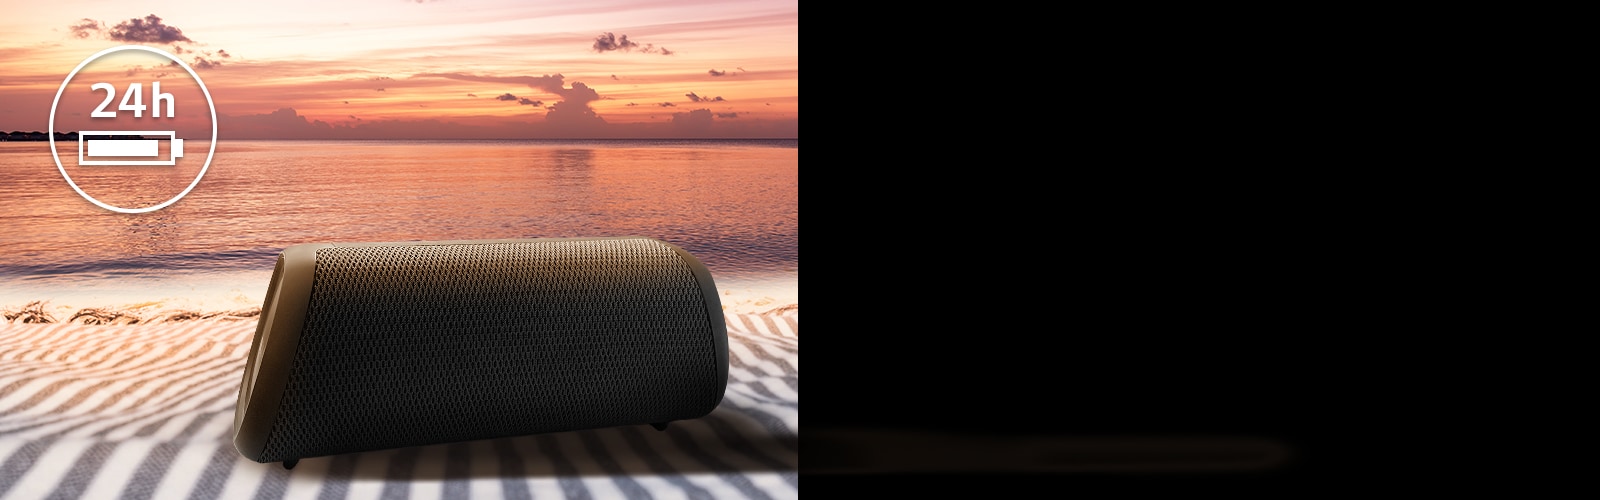 A caixa de som está colocada sobre uma toalha de praia. Na frente dela, vê-se uma praia ao pôr do sol para ilustrar que a caixa de som pode ficar ligada por até 24 horas. 